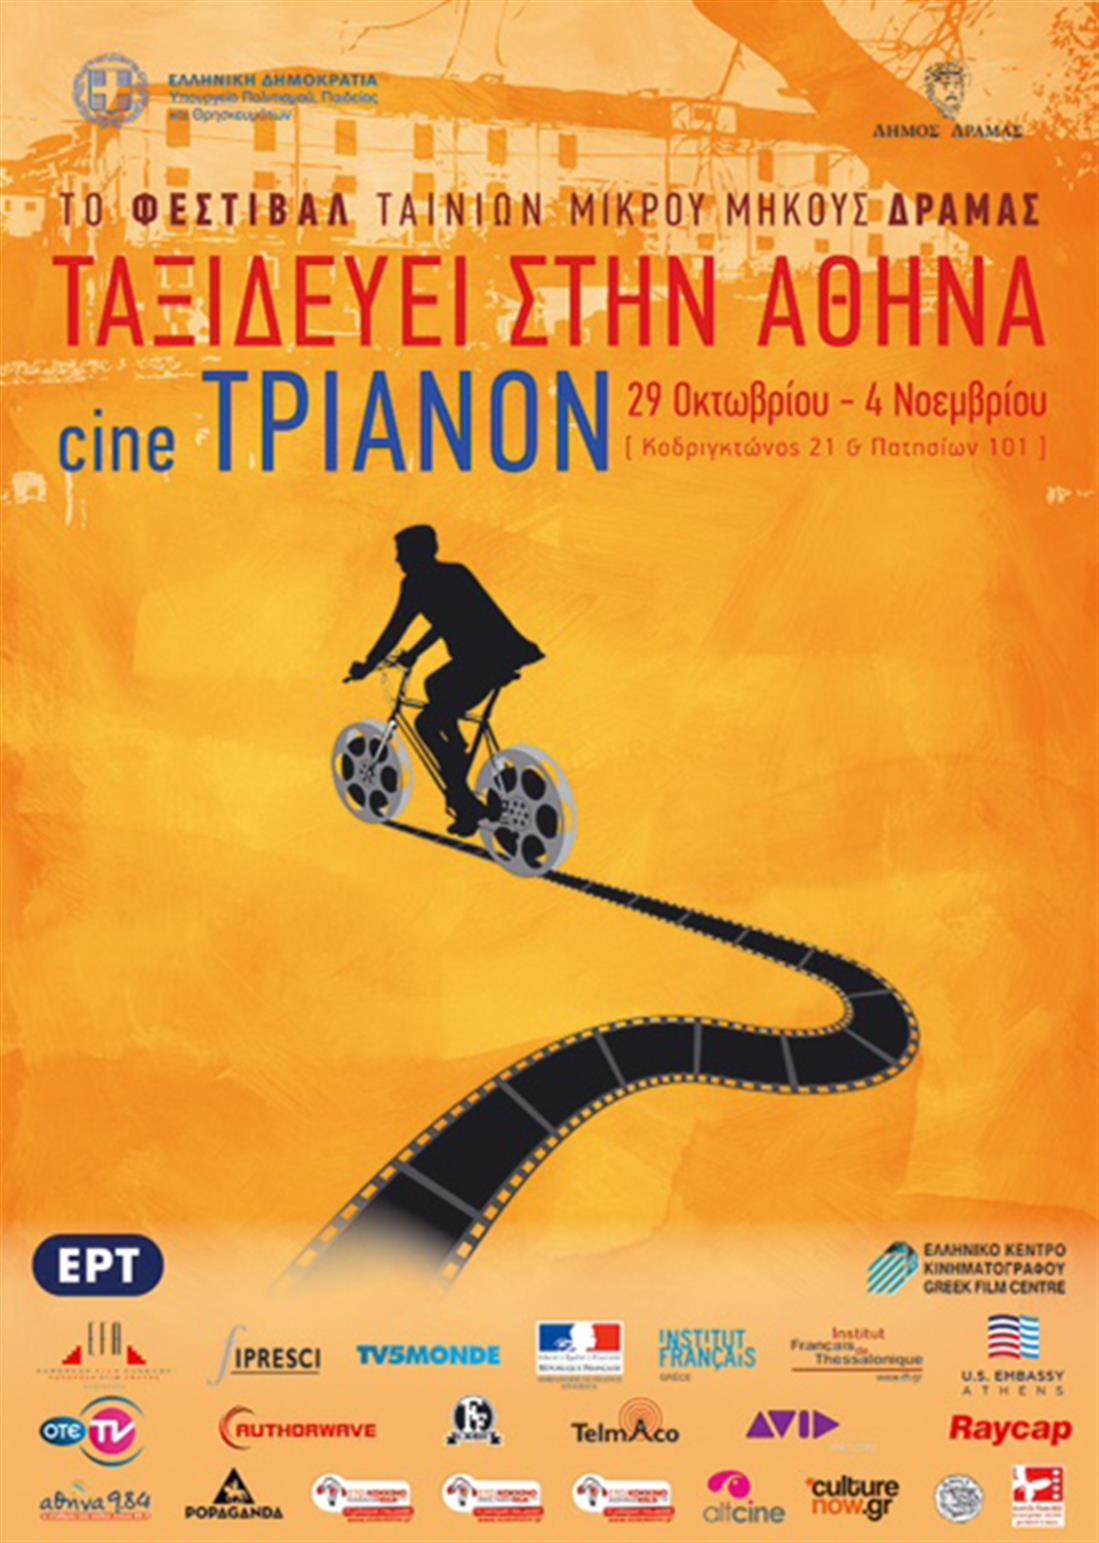 Φεστιβάλ ταινιών μικρού μήκους - Δράμα - Αθήνα - κινηματογράφος Τριανόν - poster - αφίσα